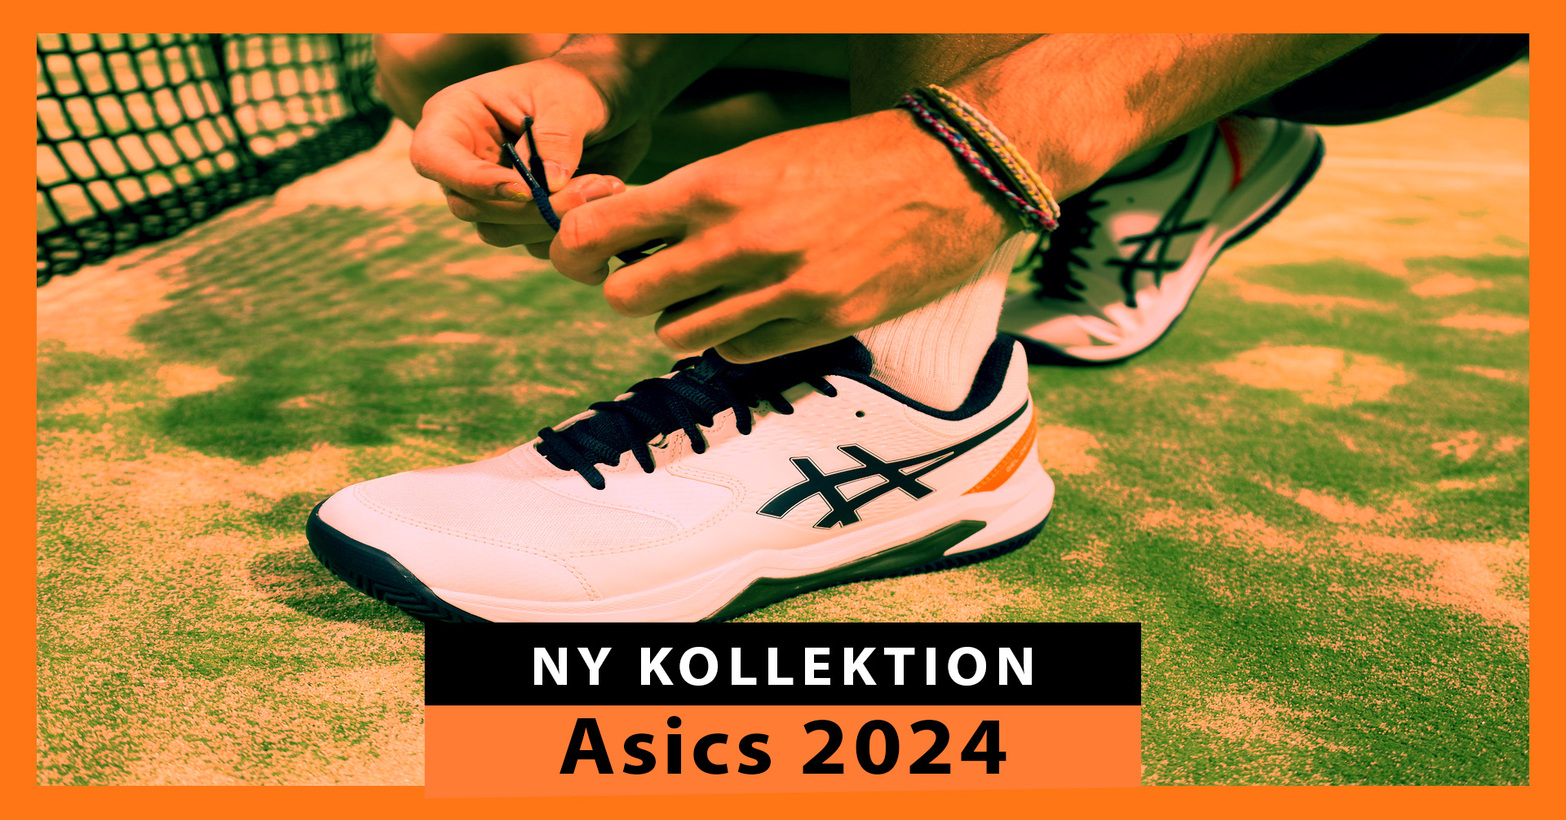 Ny kollektion av Asics padelskor 2024: klass och komfort för att täcka 20x10